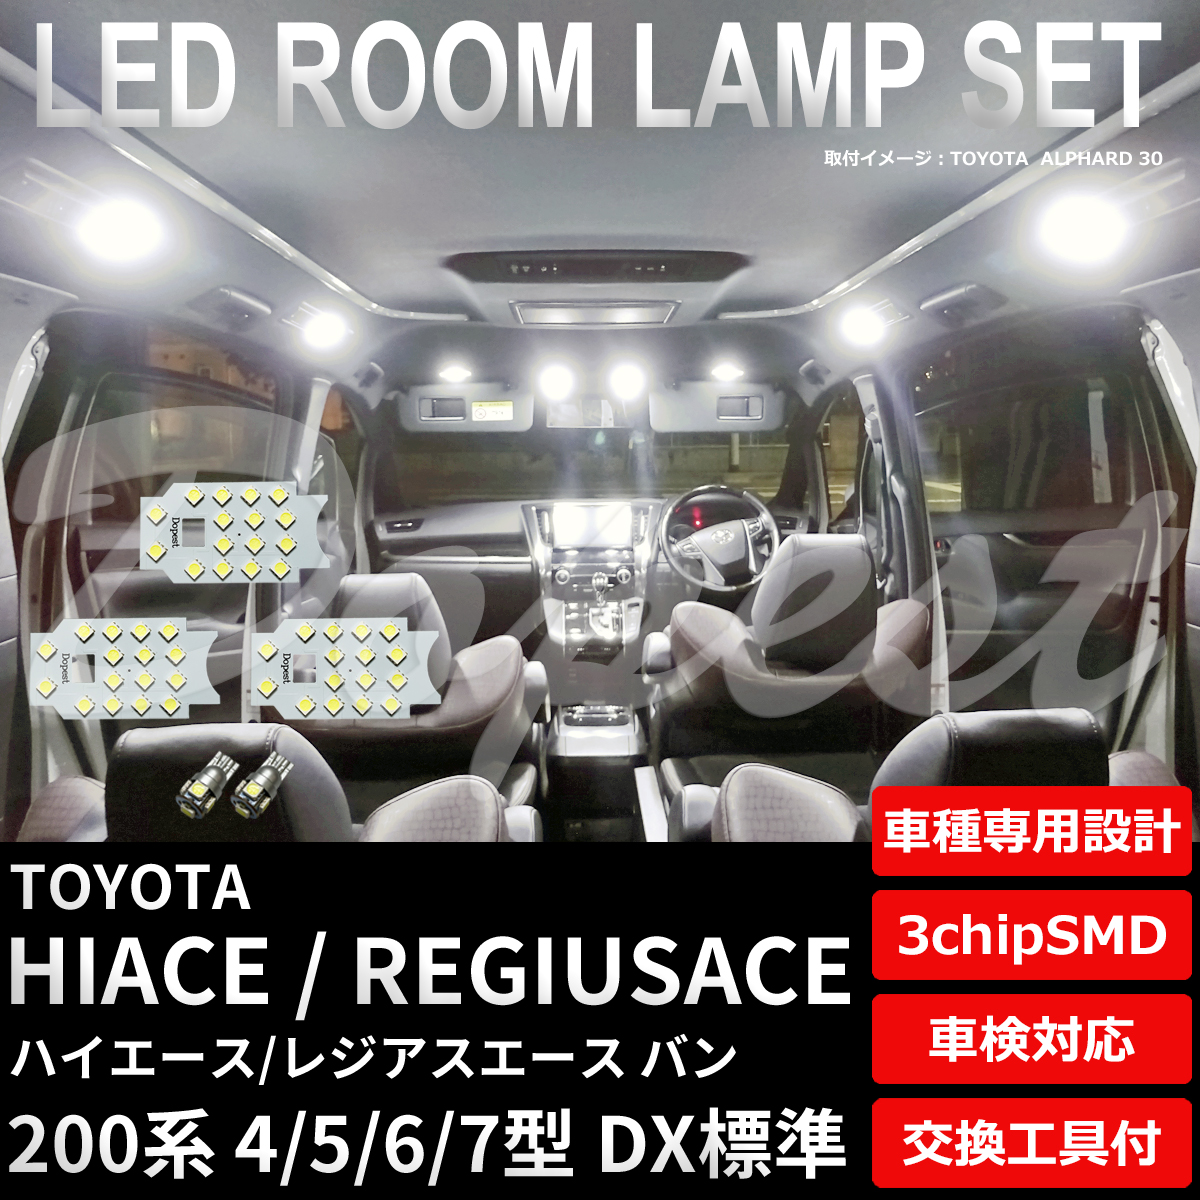 ハイエース LEDルームランプセット 200系 4 5 6 7型 DX標準